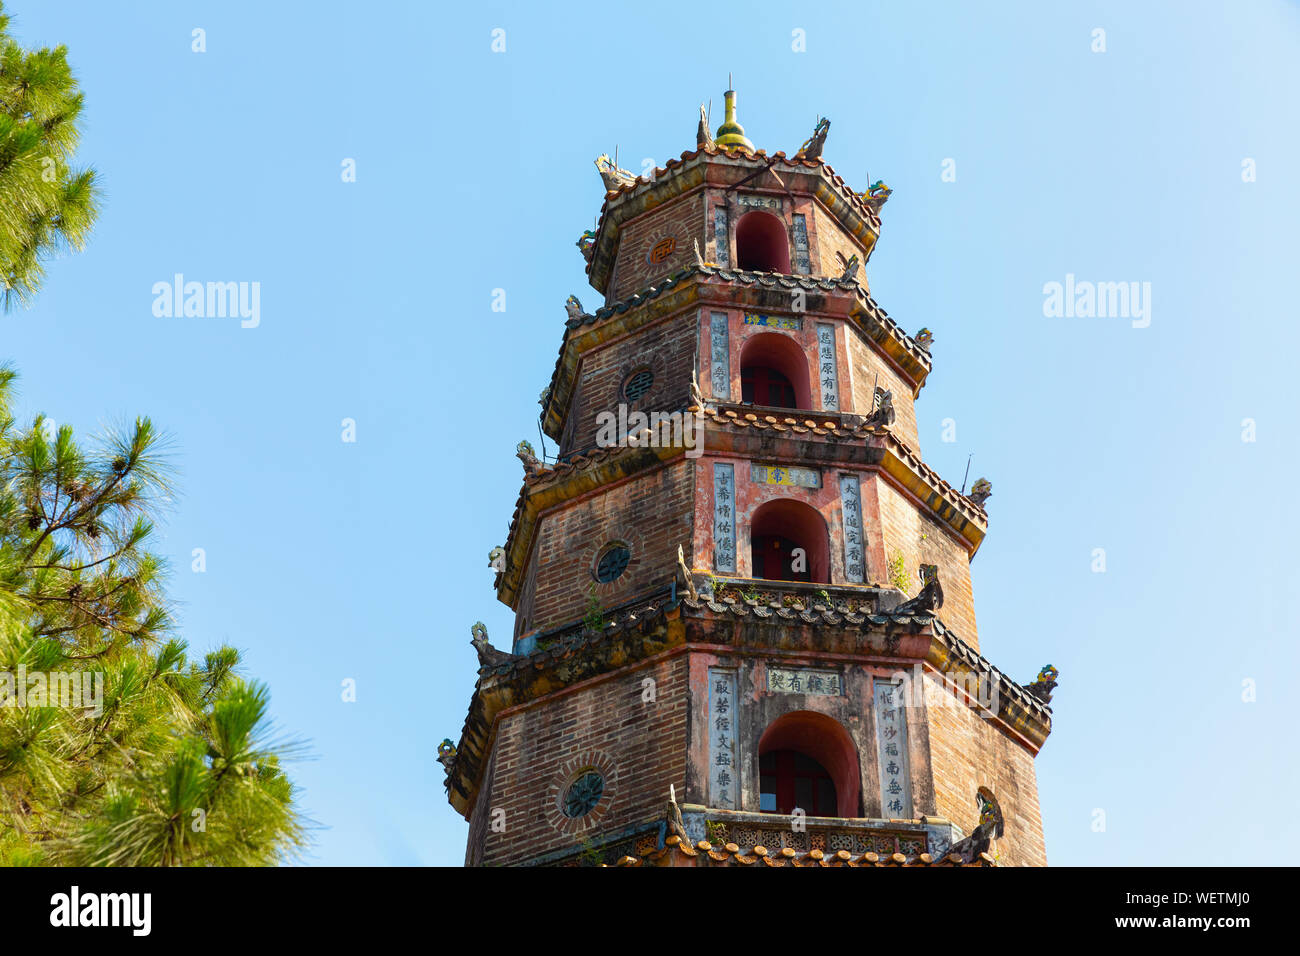 Thien Mu Pagoda (Chua Thien Mu), Hue, Thua Thien Hue Province, Vietnam, Asia Stock Photo